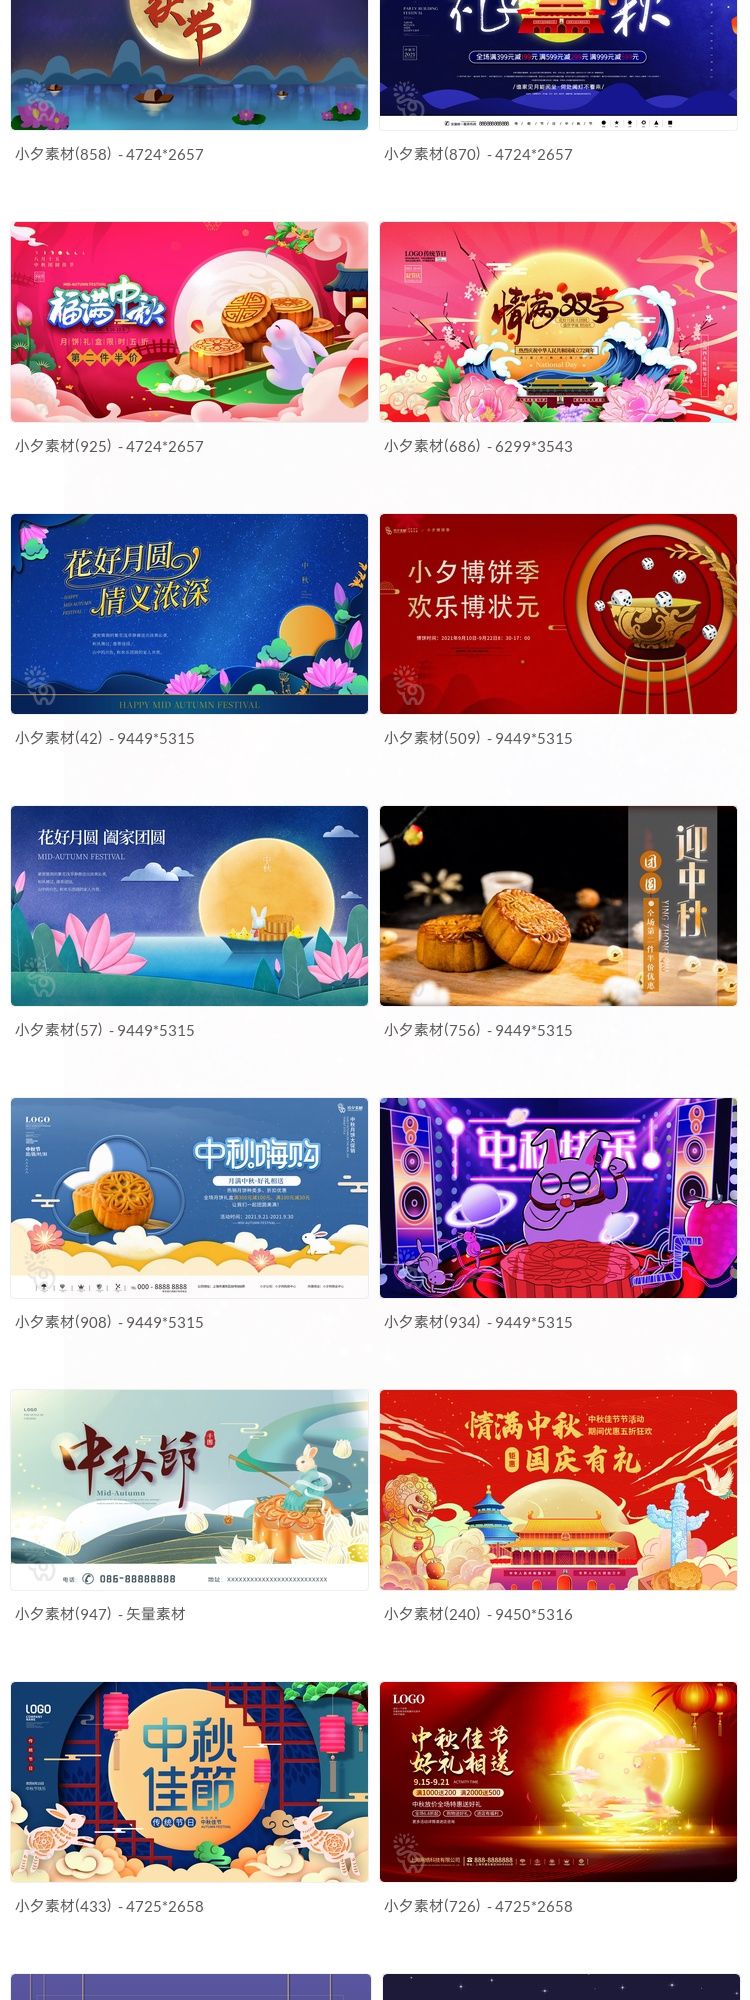 中秋节月饼嫦娥玉兔宣传促销海报展板模板PSD插图3小新卖蜡笔